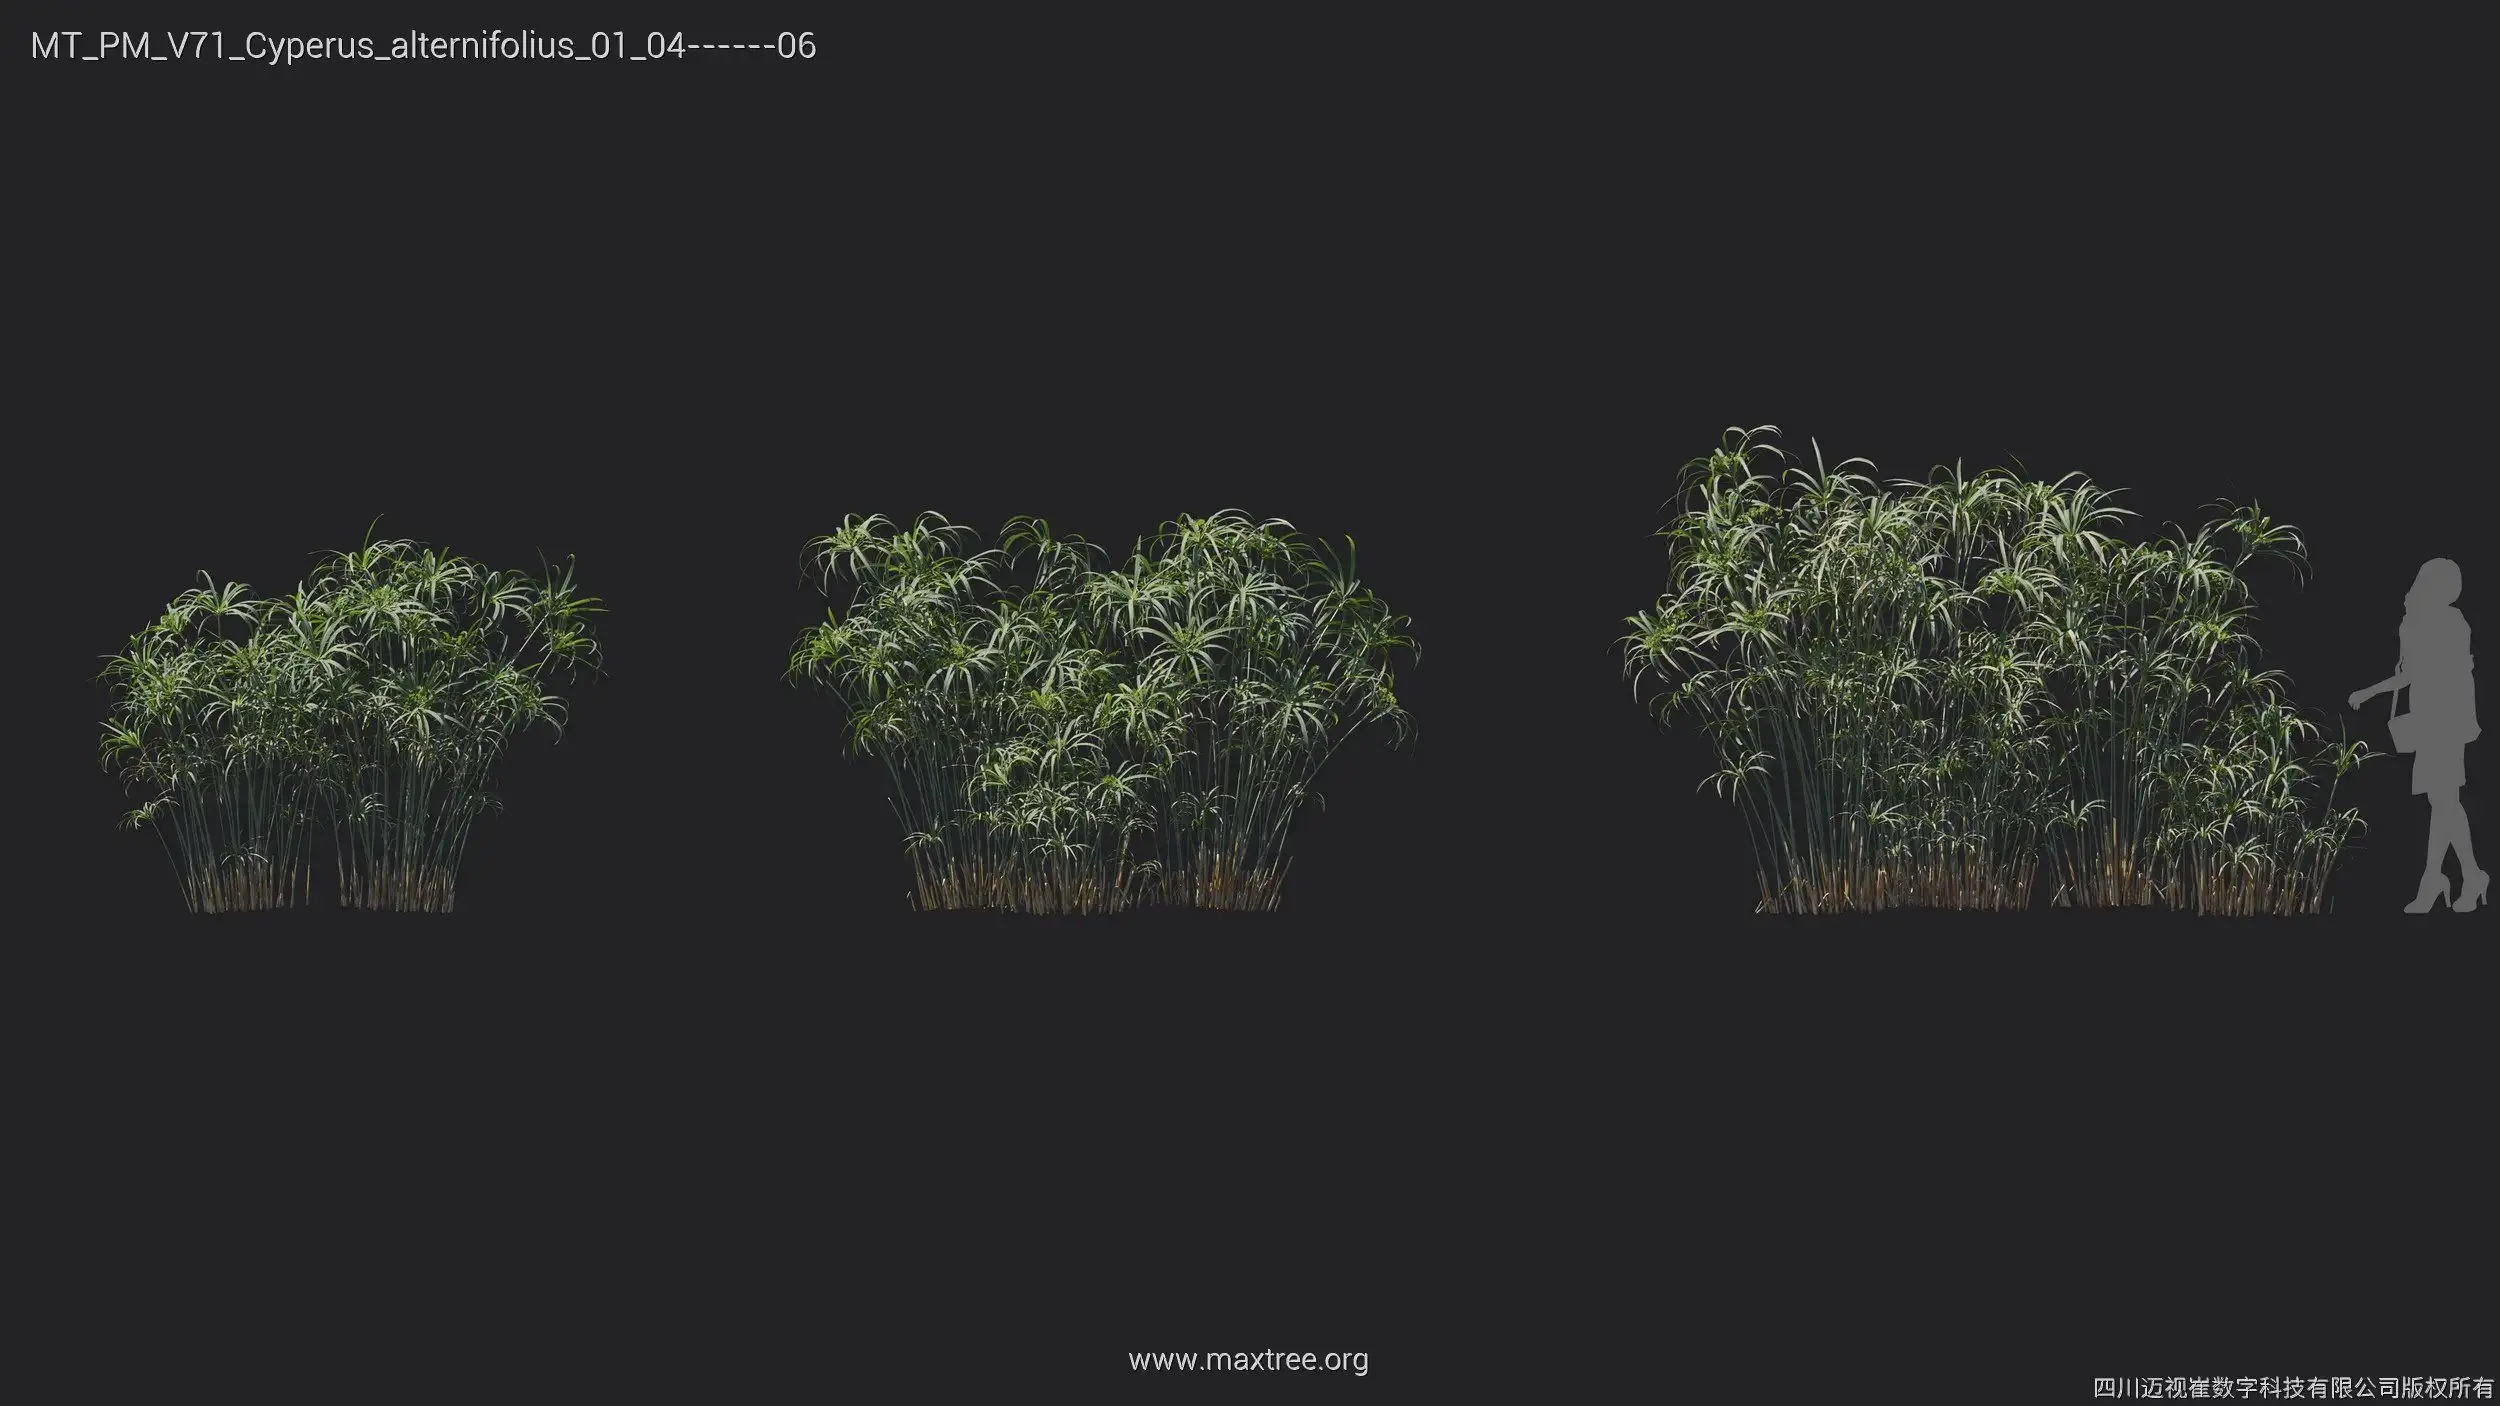 دانلود 72 مدل سه بعدی درخت گرمسیری - 8